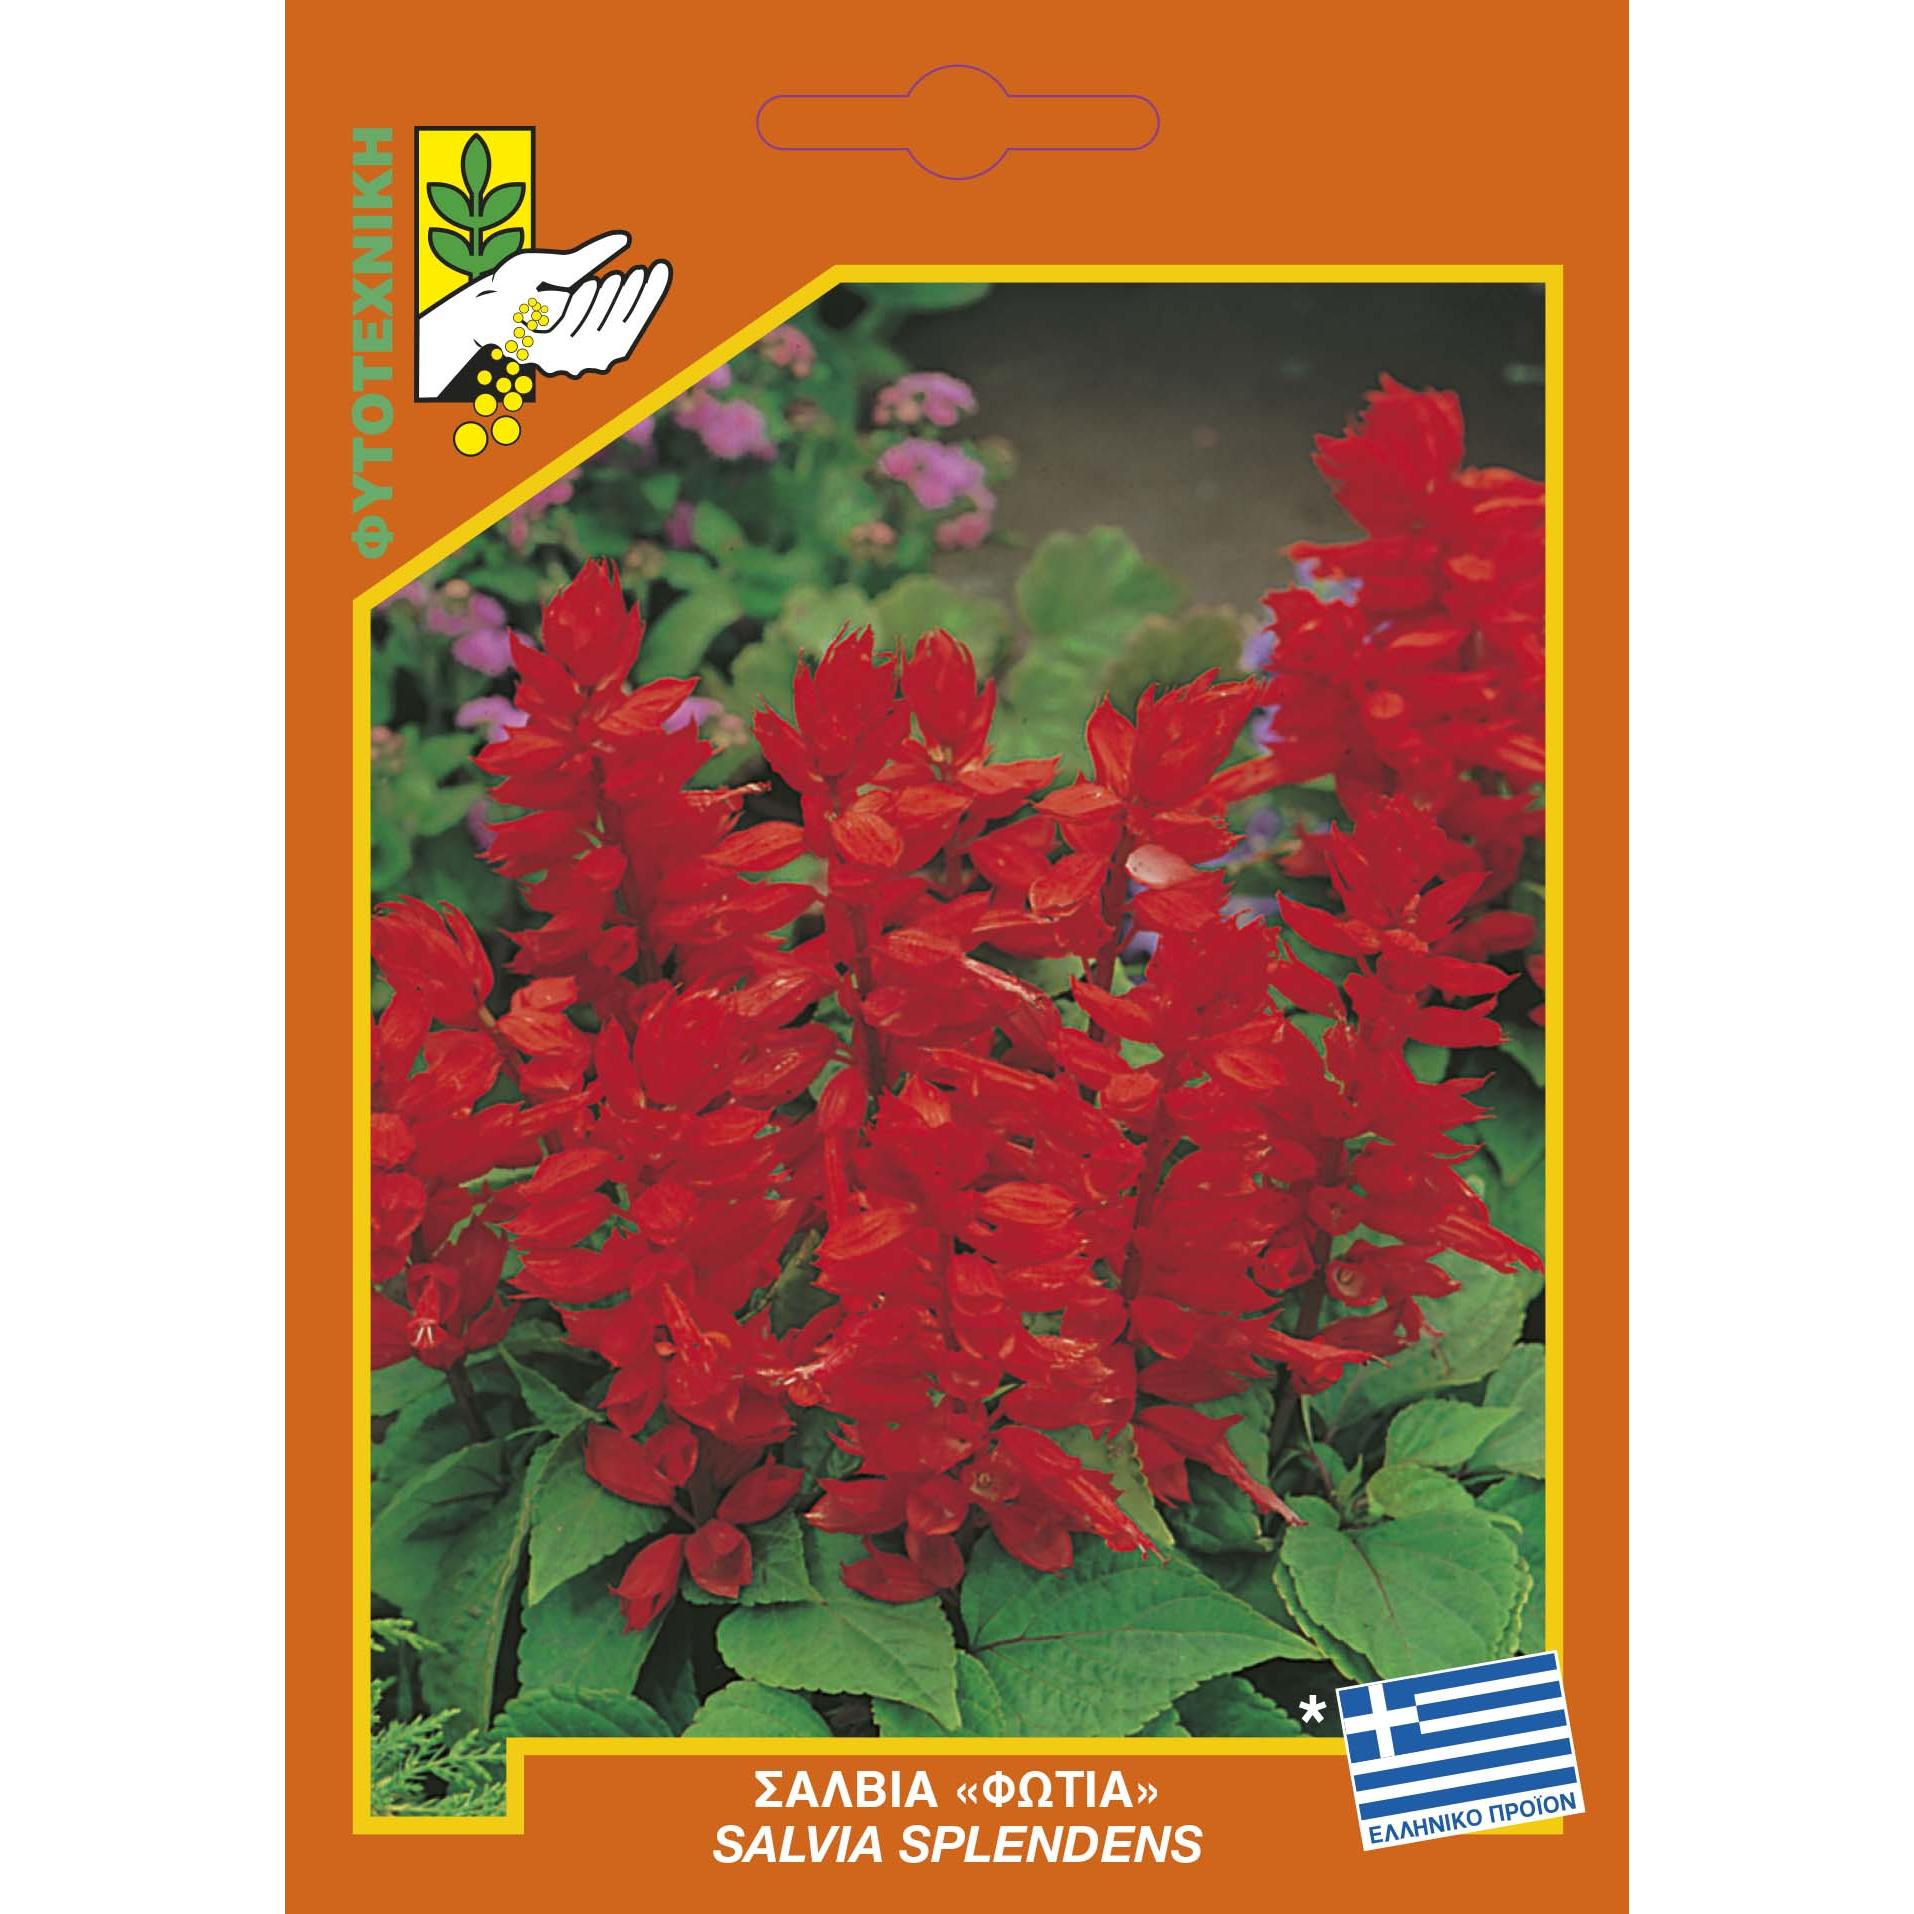 580 Salvia splendens